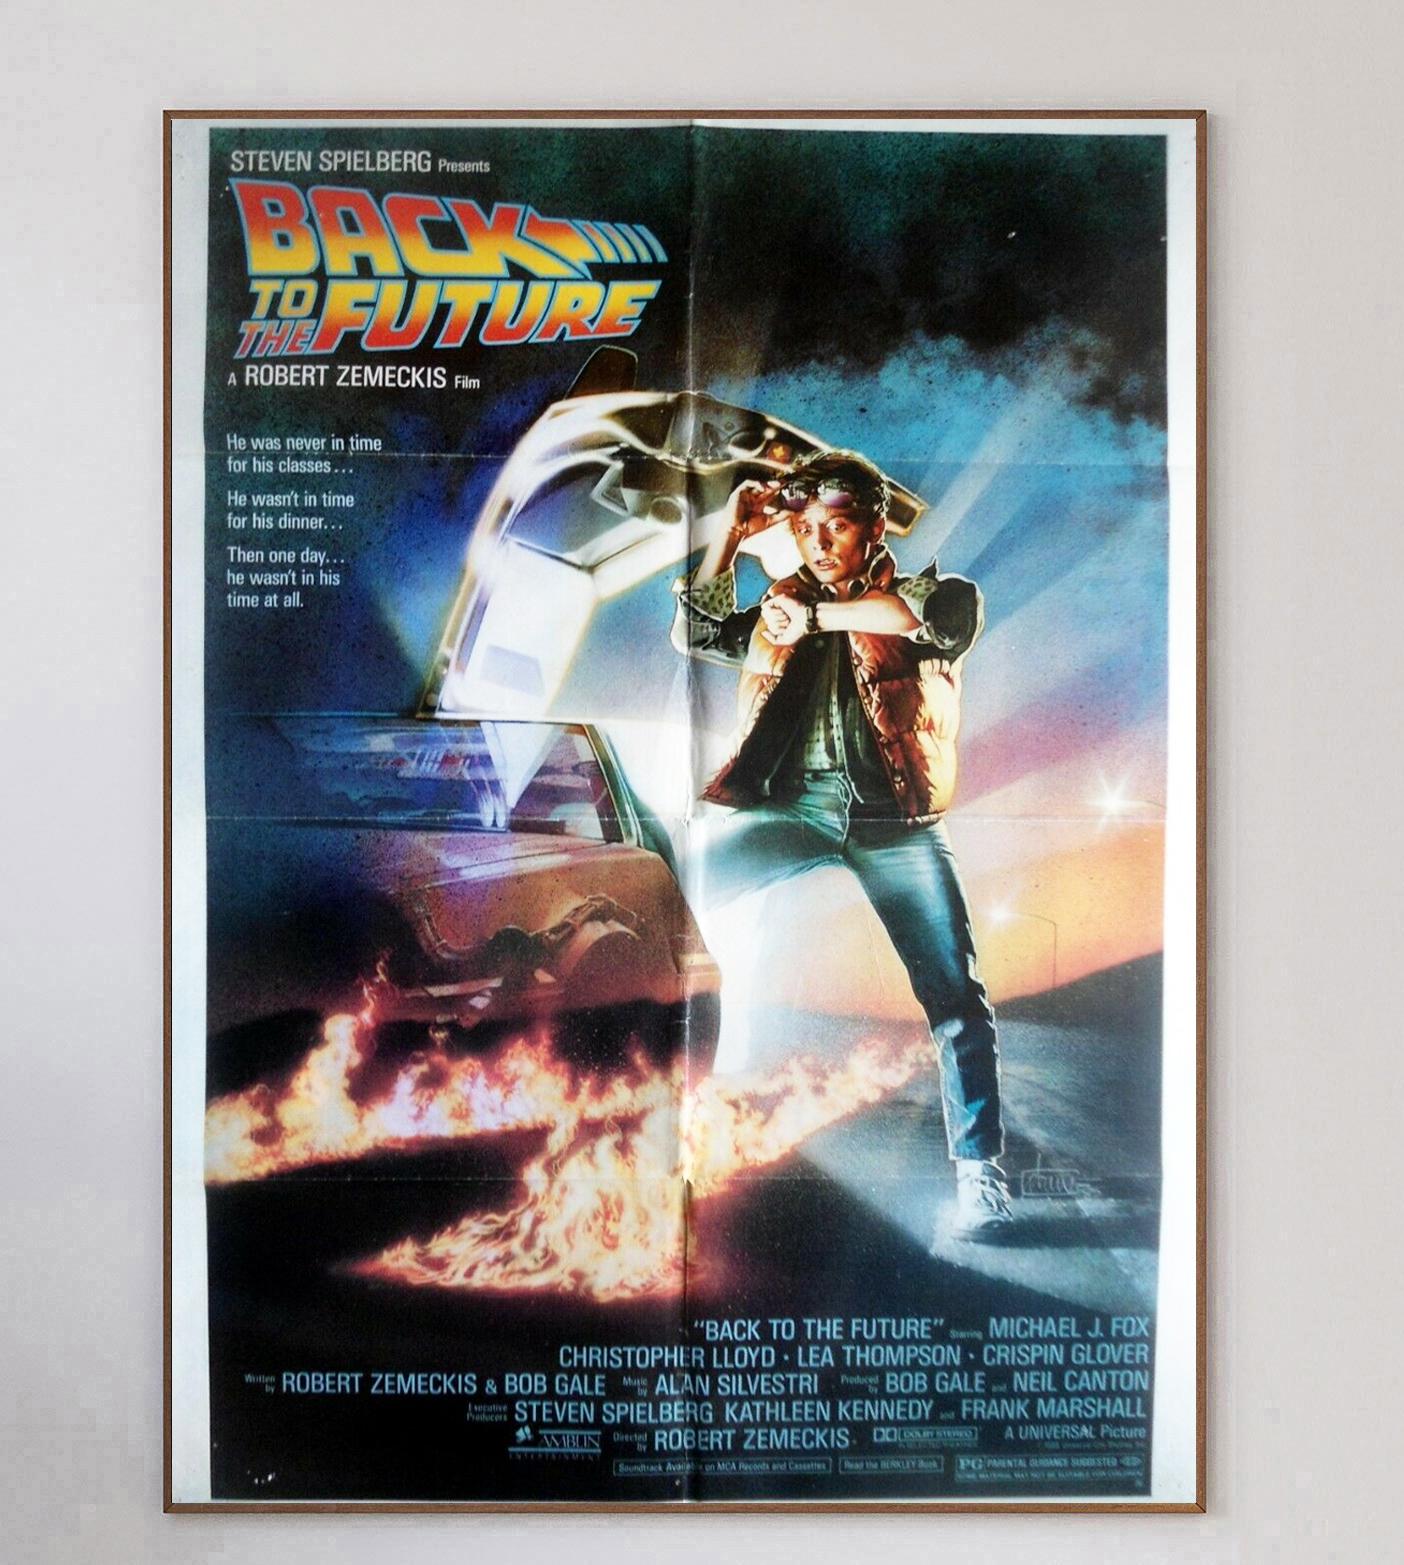 Der von Robert Zemeckis inszenierte Film Zurück in die Zukunft kam 1985 mit 88 Meilen pro Stunde in die Kinos. Das Zeitreise-Märchen, das Michael J. Fox zum Superstar und den DeLorean zum Must-Have-Auto machte, gilt heute als einer der größten Filme